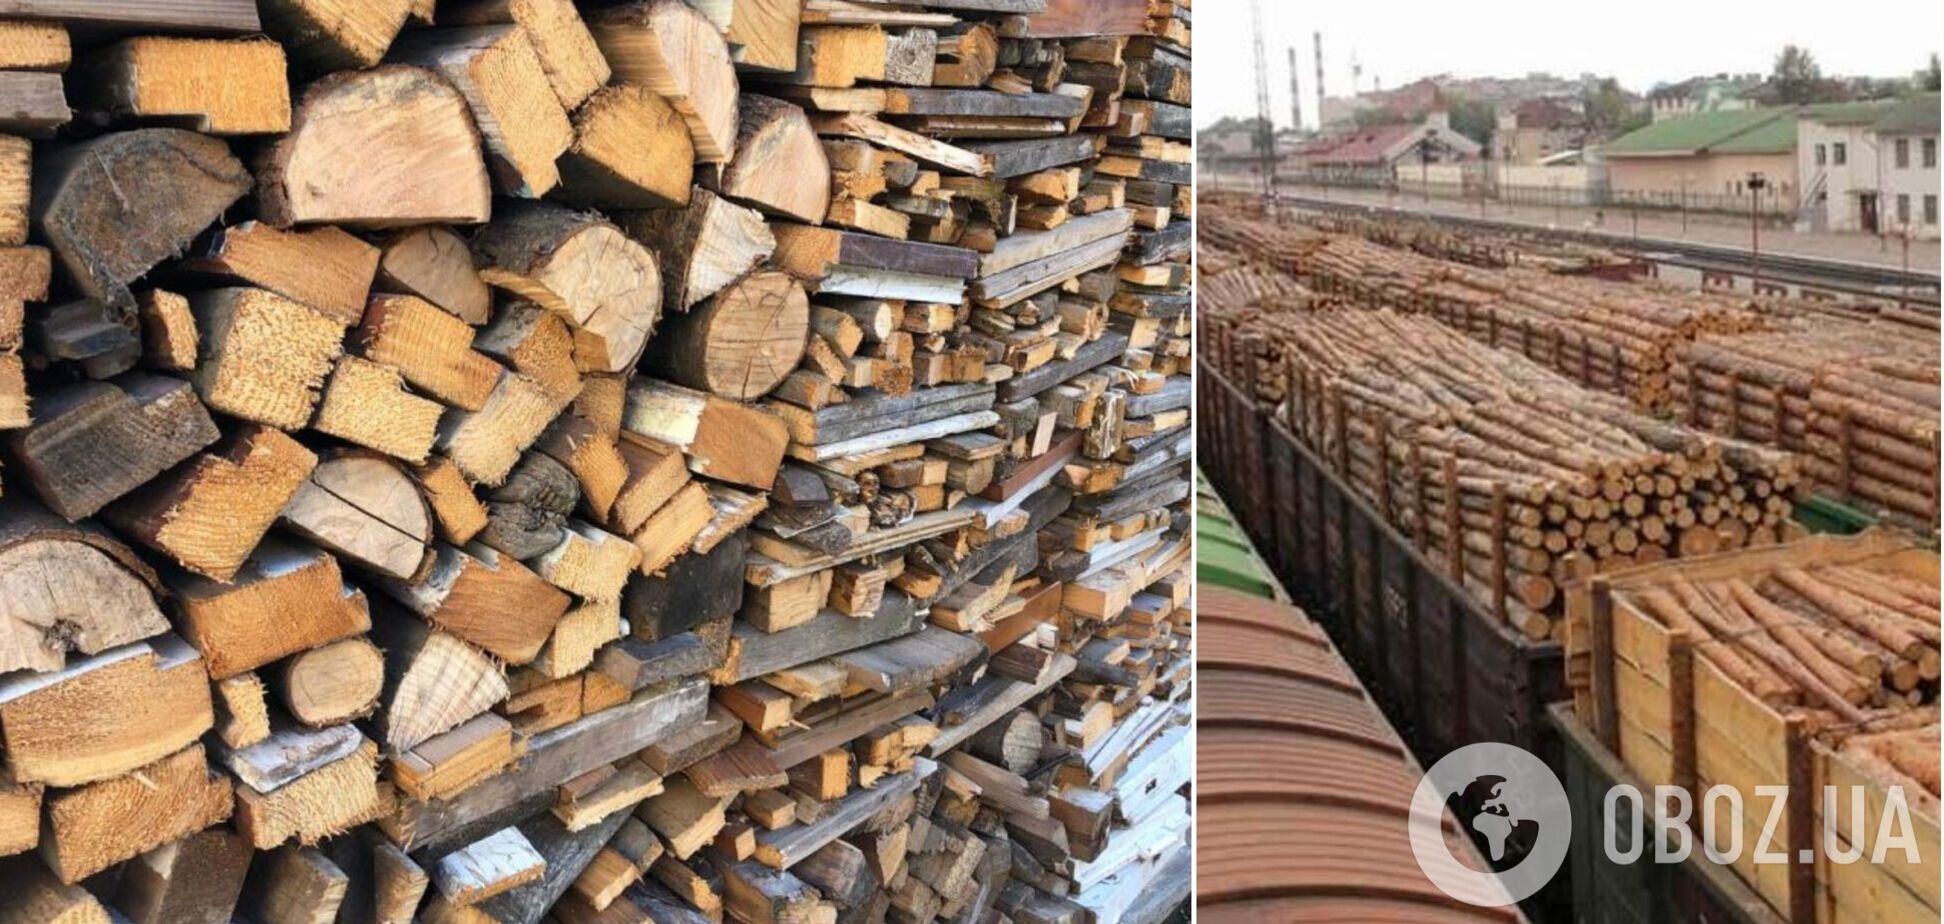 Украинцам бесплатно раздадут 5000 вагонов дров